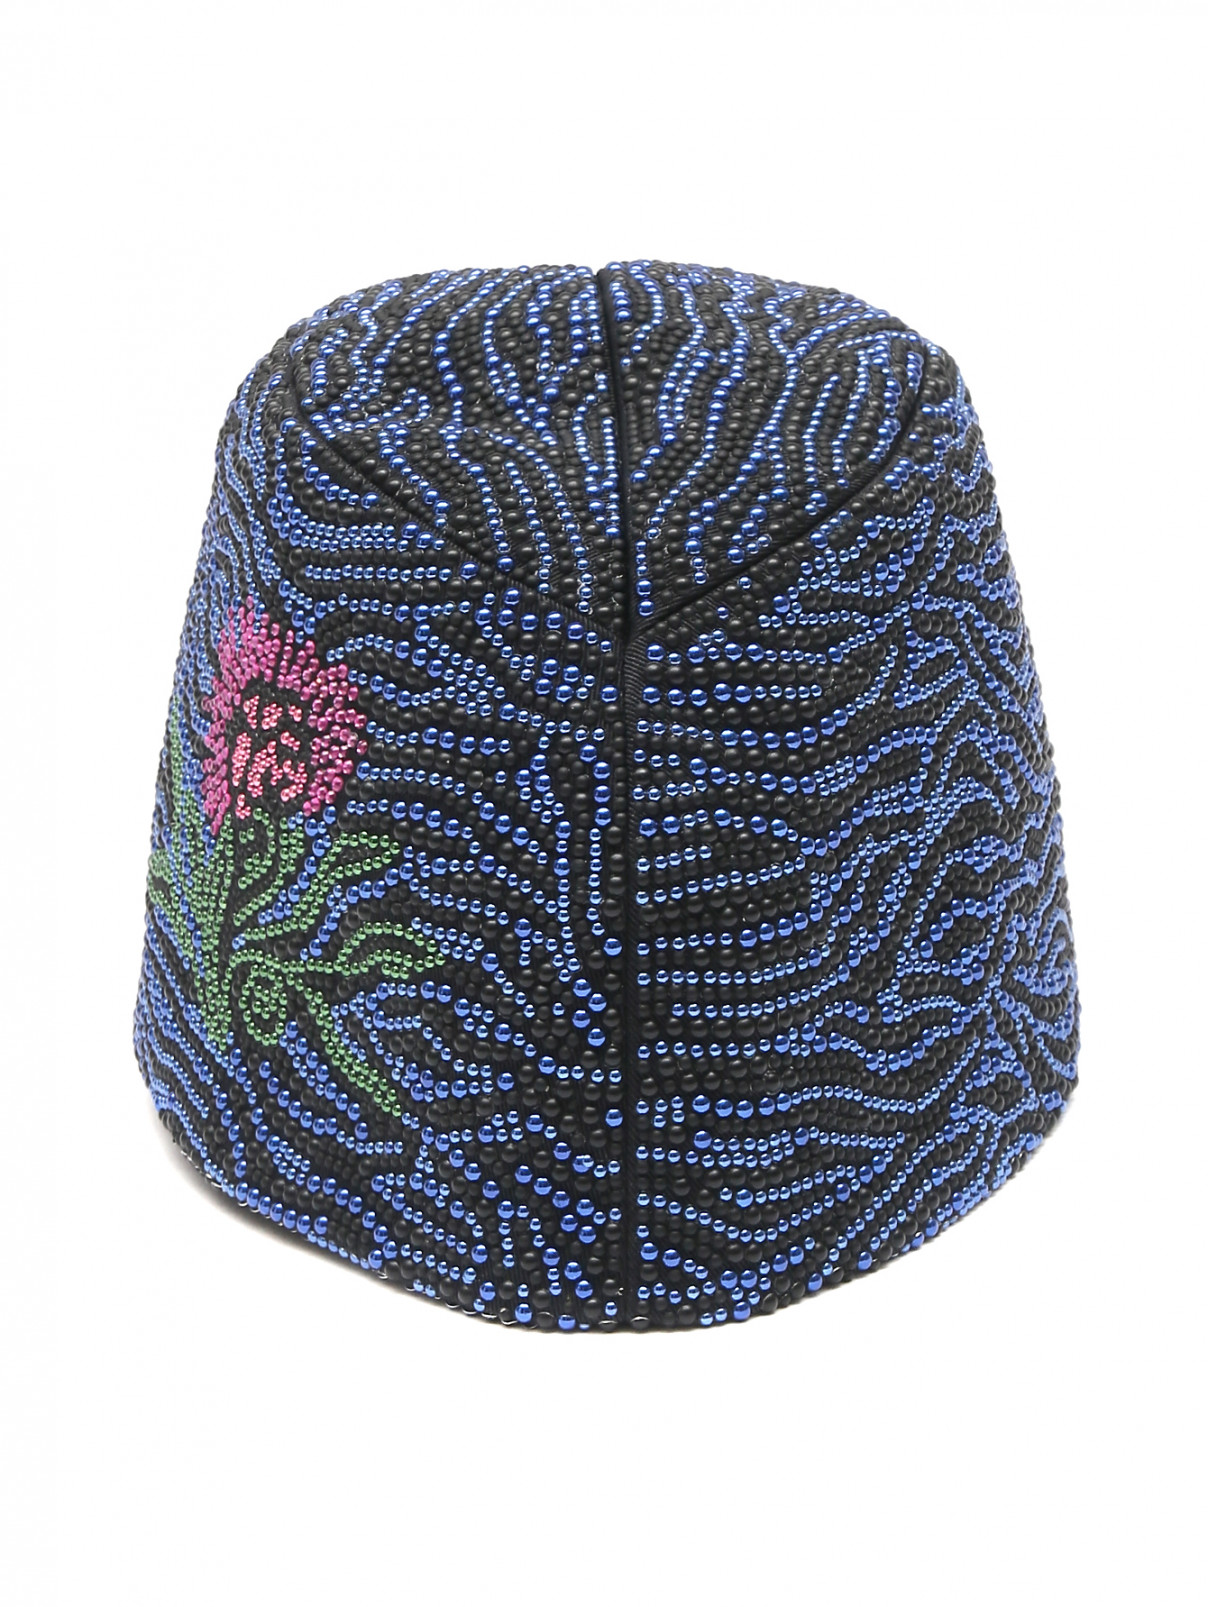 Шляпа декорированная стразами Borsalino  –  Общий вид  – Цвет:  Синий